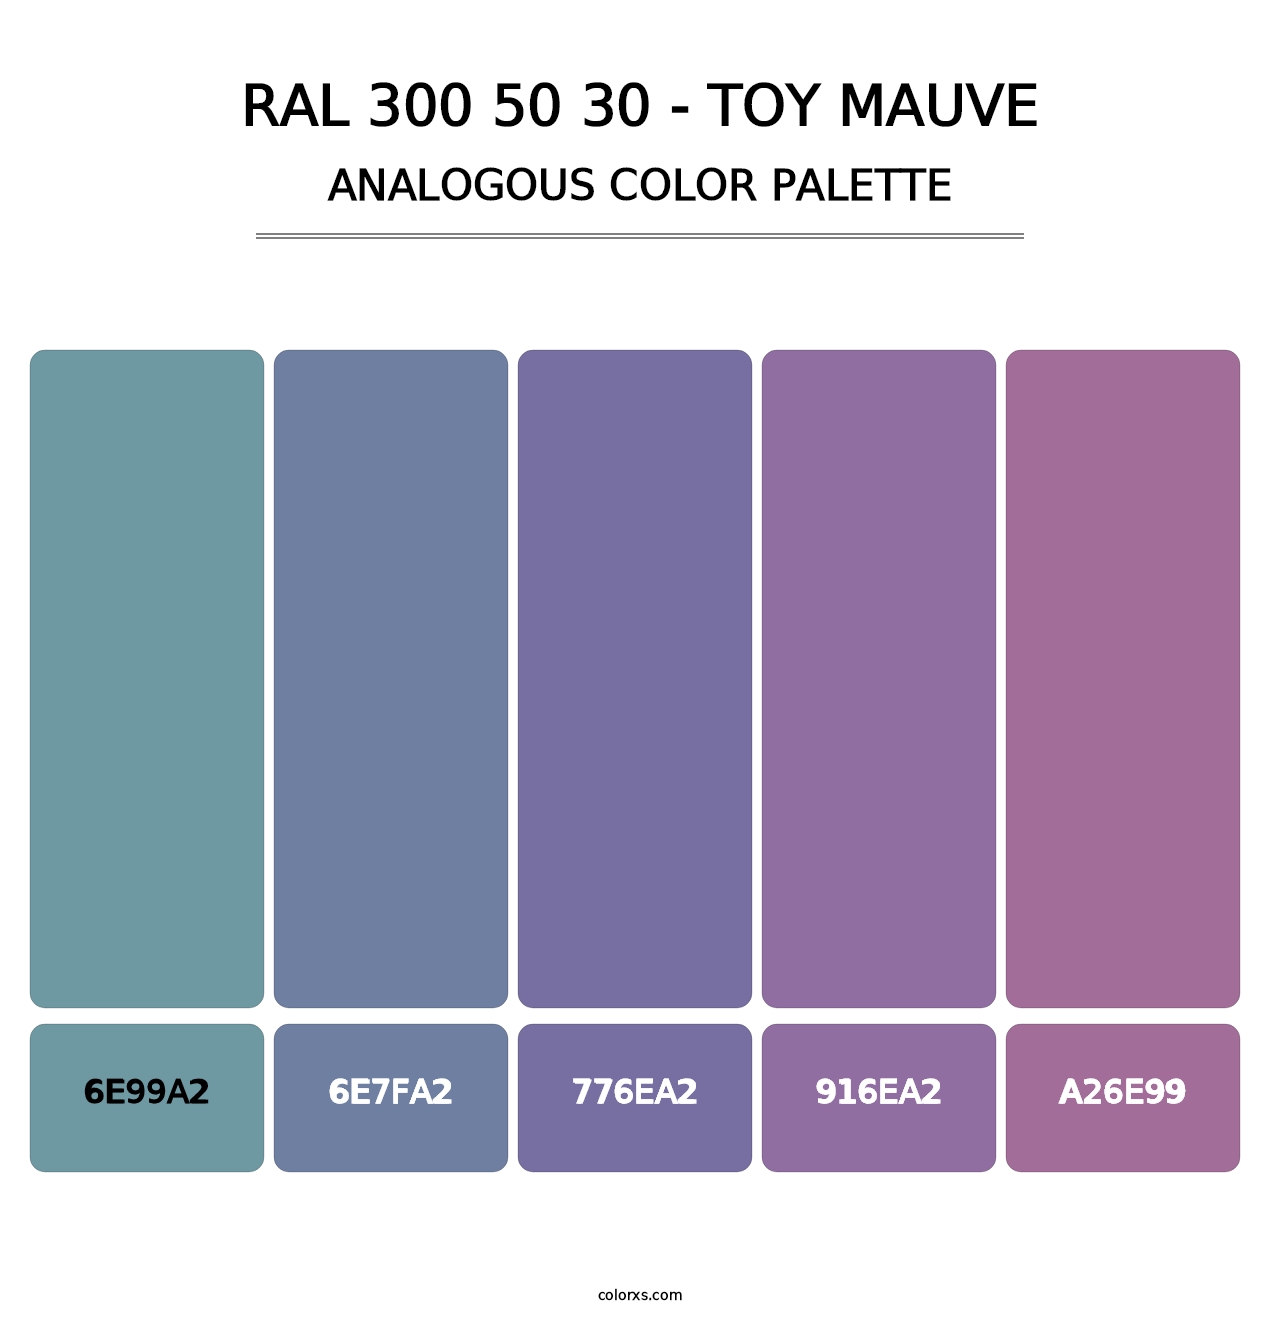 RAL 300 50 30 - Toy Mauve - Analogous Color Palette